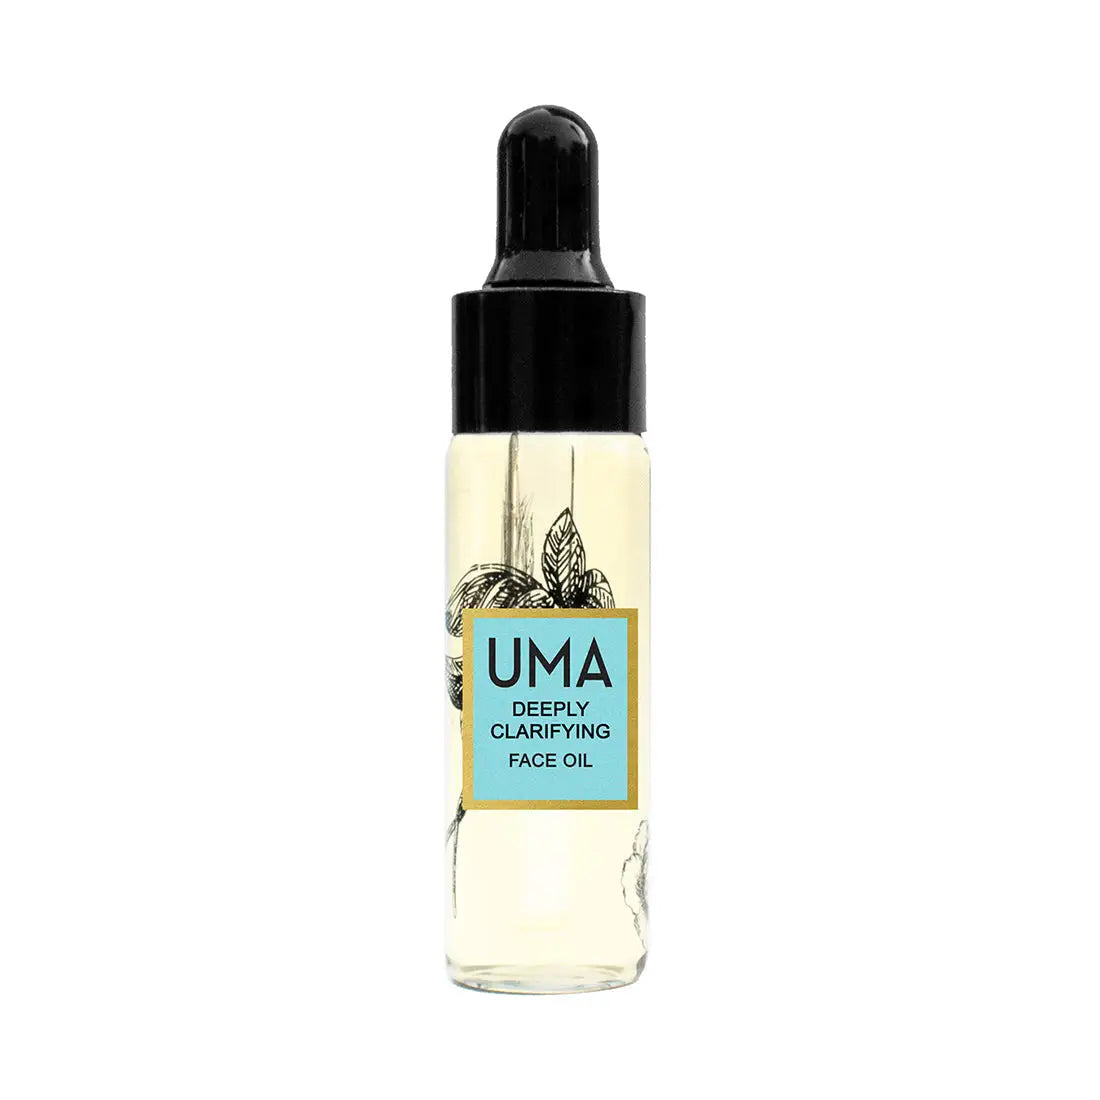 UMA Deeply Clarifying Face Oil 15ml